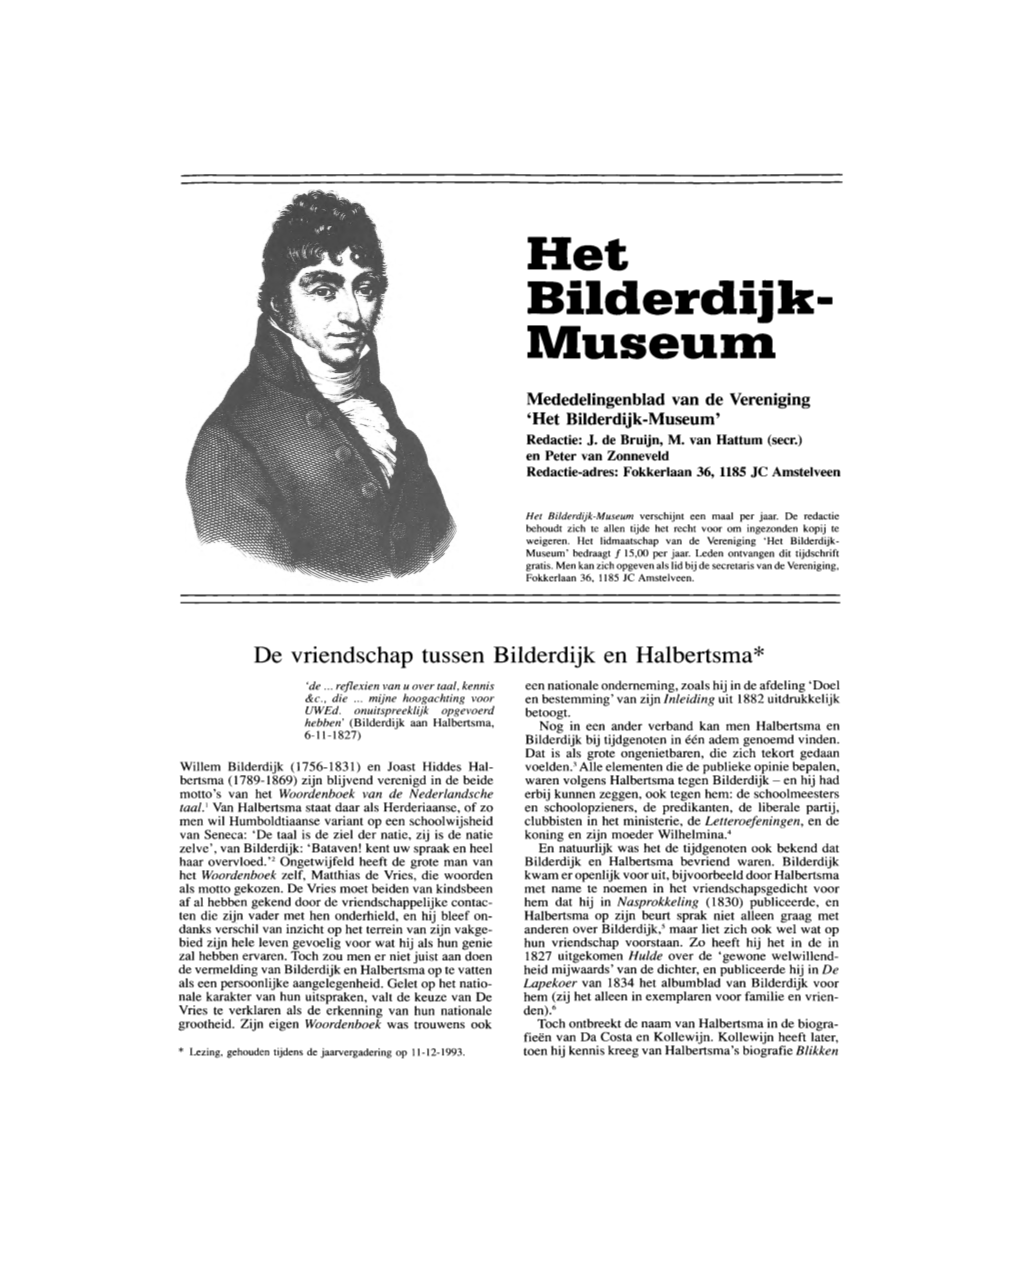 Bilderdijk-Museum' Redaetie: J